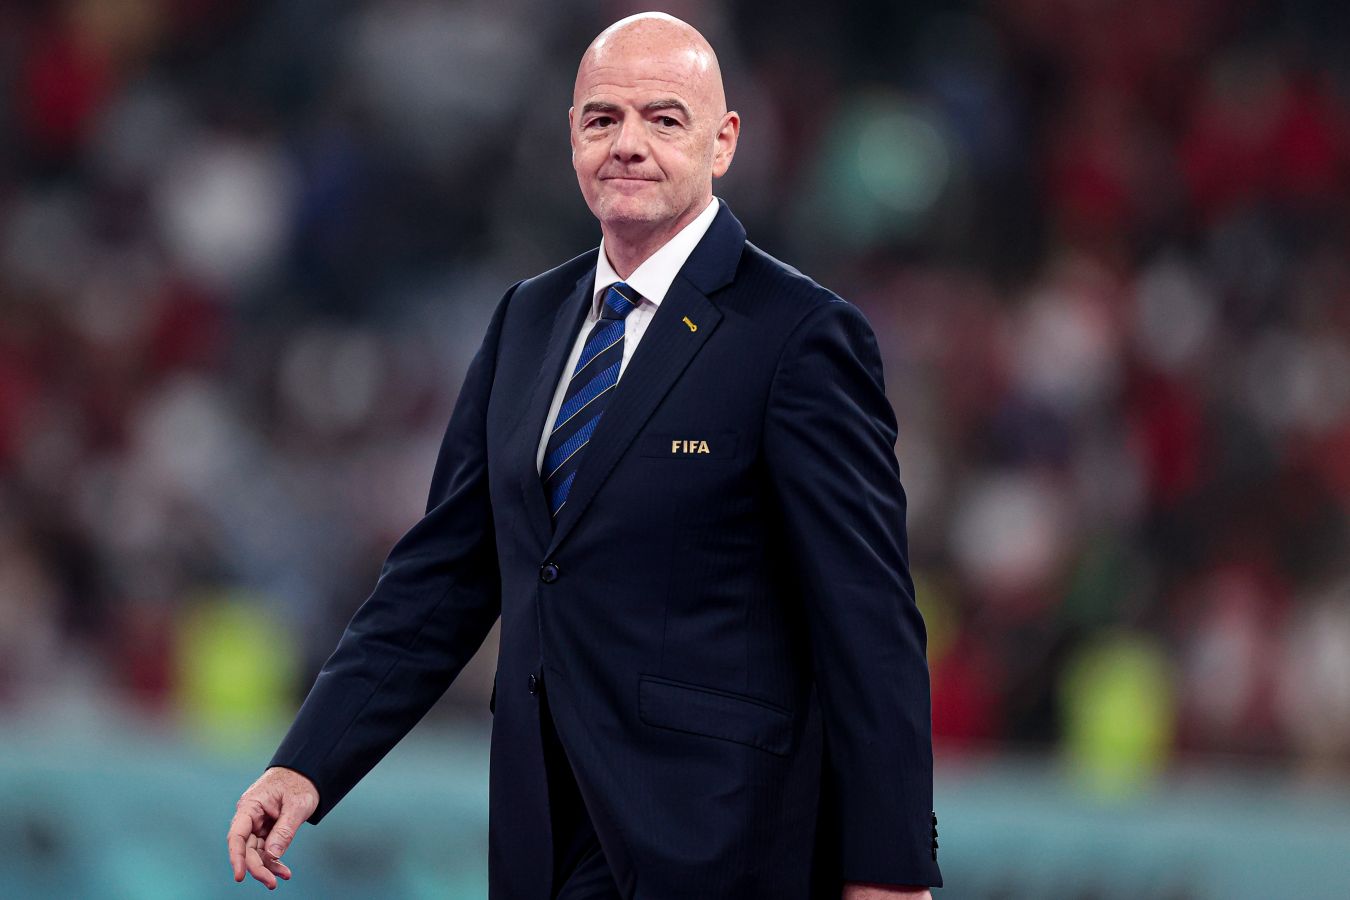 Канчельскис: глава ФИФА Инфантино хочет выделяться — ходит в костюме и белых кроссовках